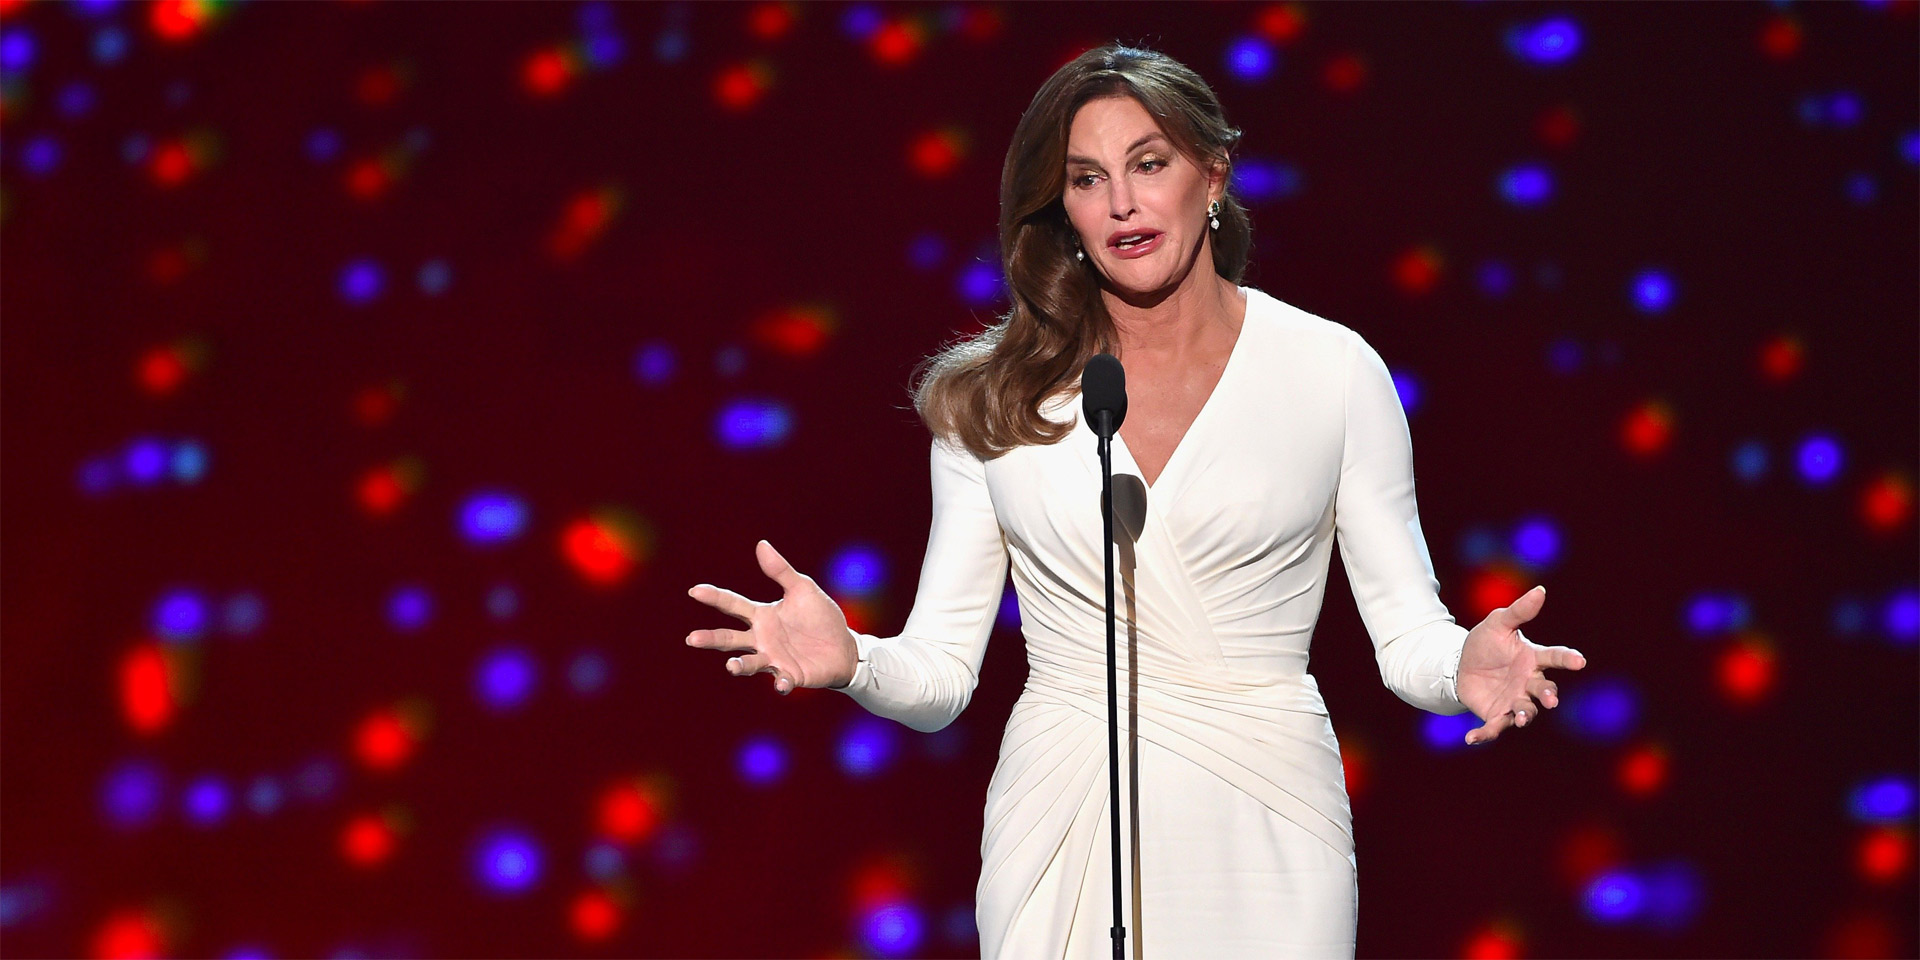 Durante los premios deportivos "ESPY", Caitlyn Jenner recibió el reconocimiento "Arthur Ashe" por su coraje